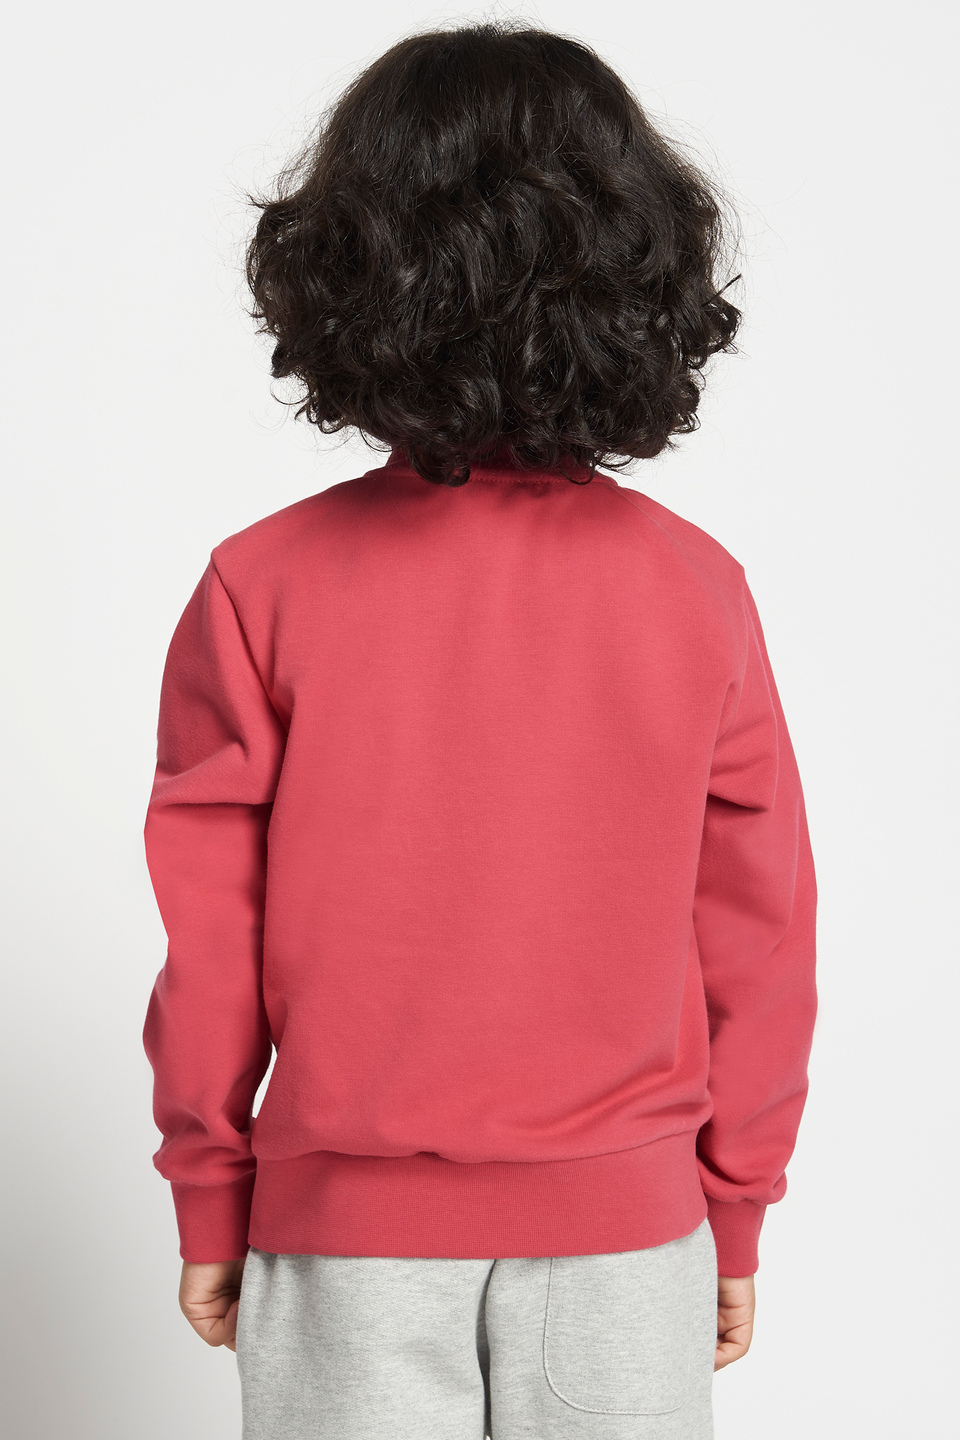 Plain-coloured sweatshirt with a front zip | La Martina - Official Online Shop